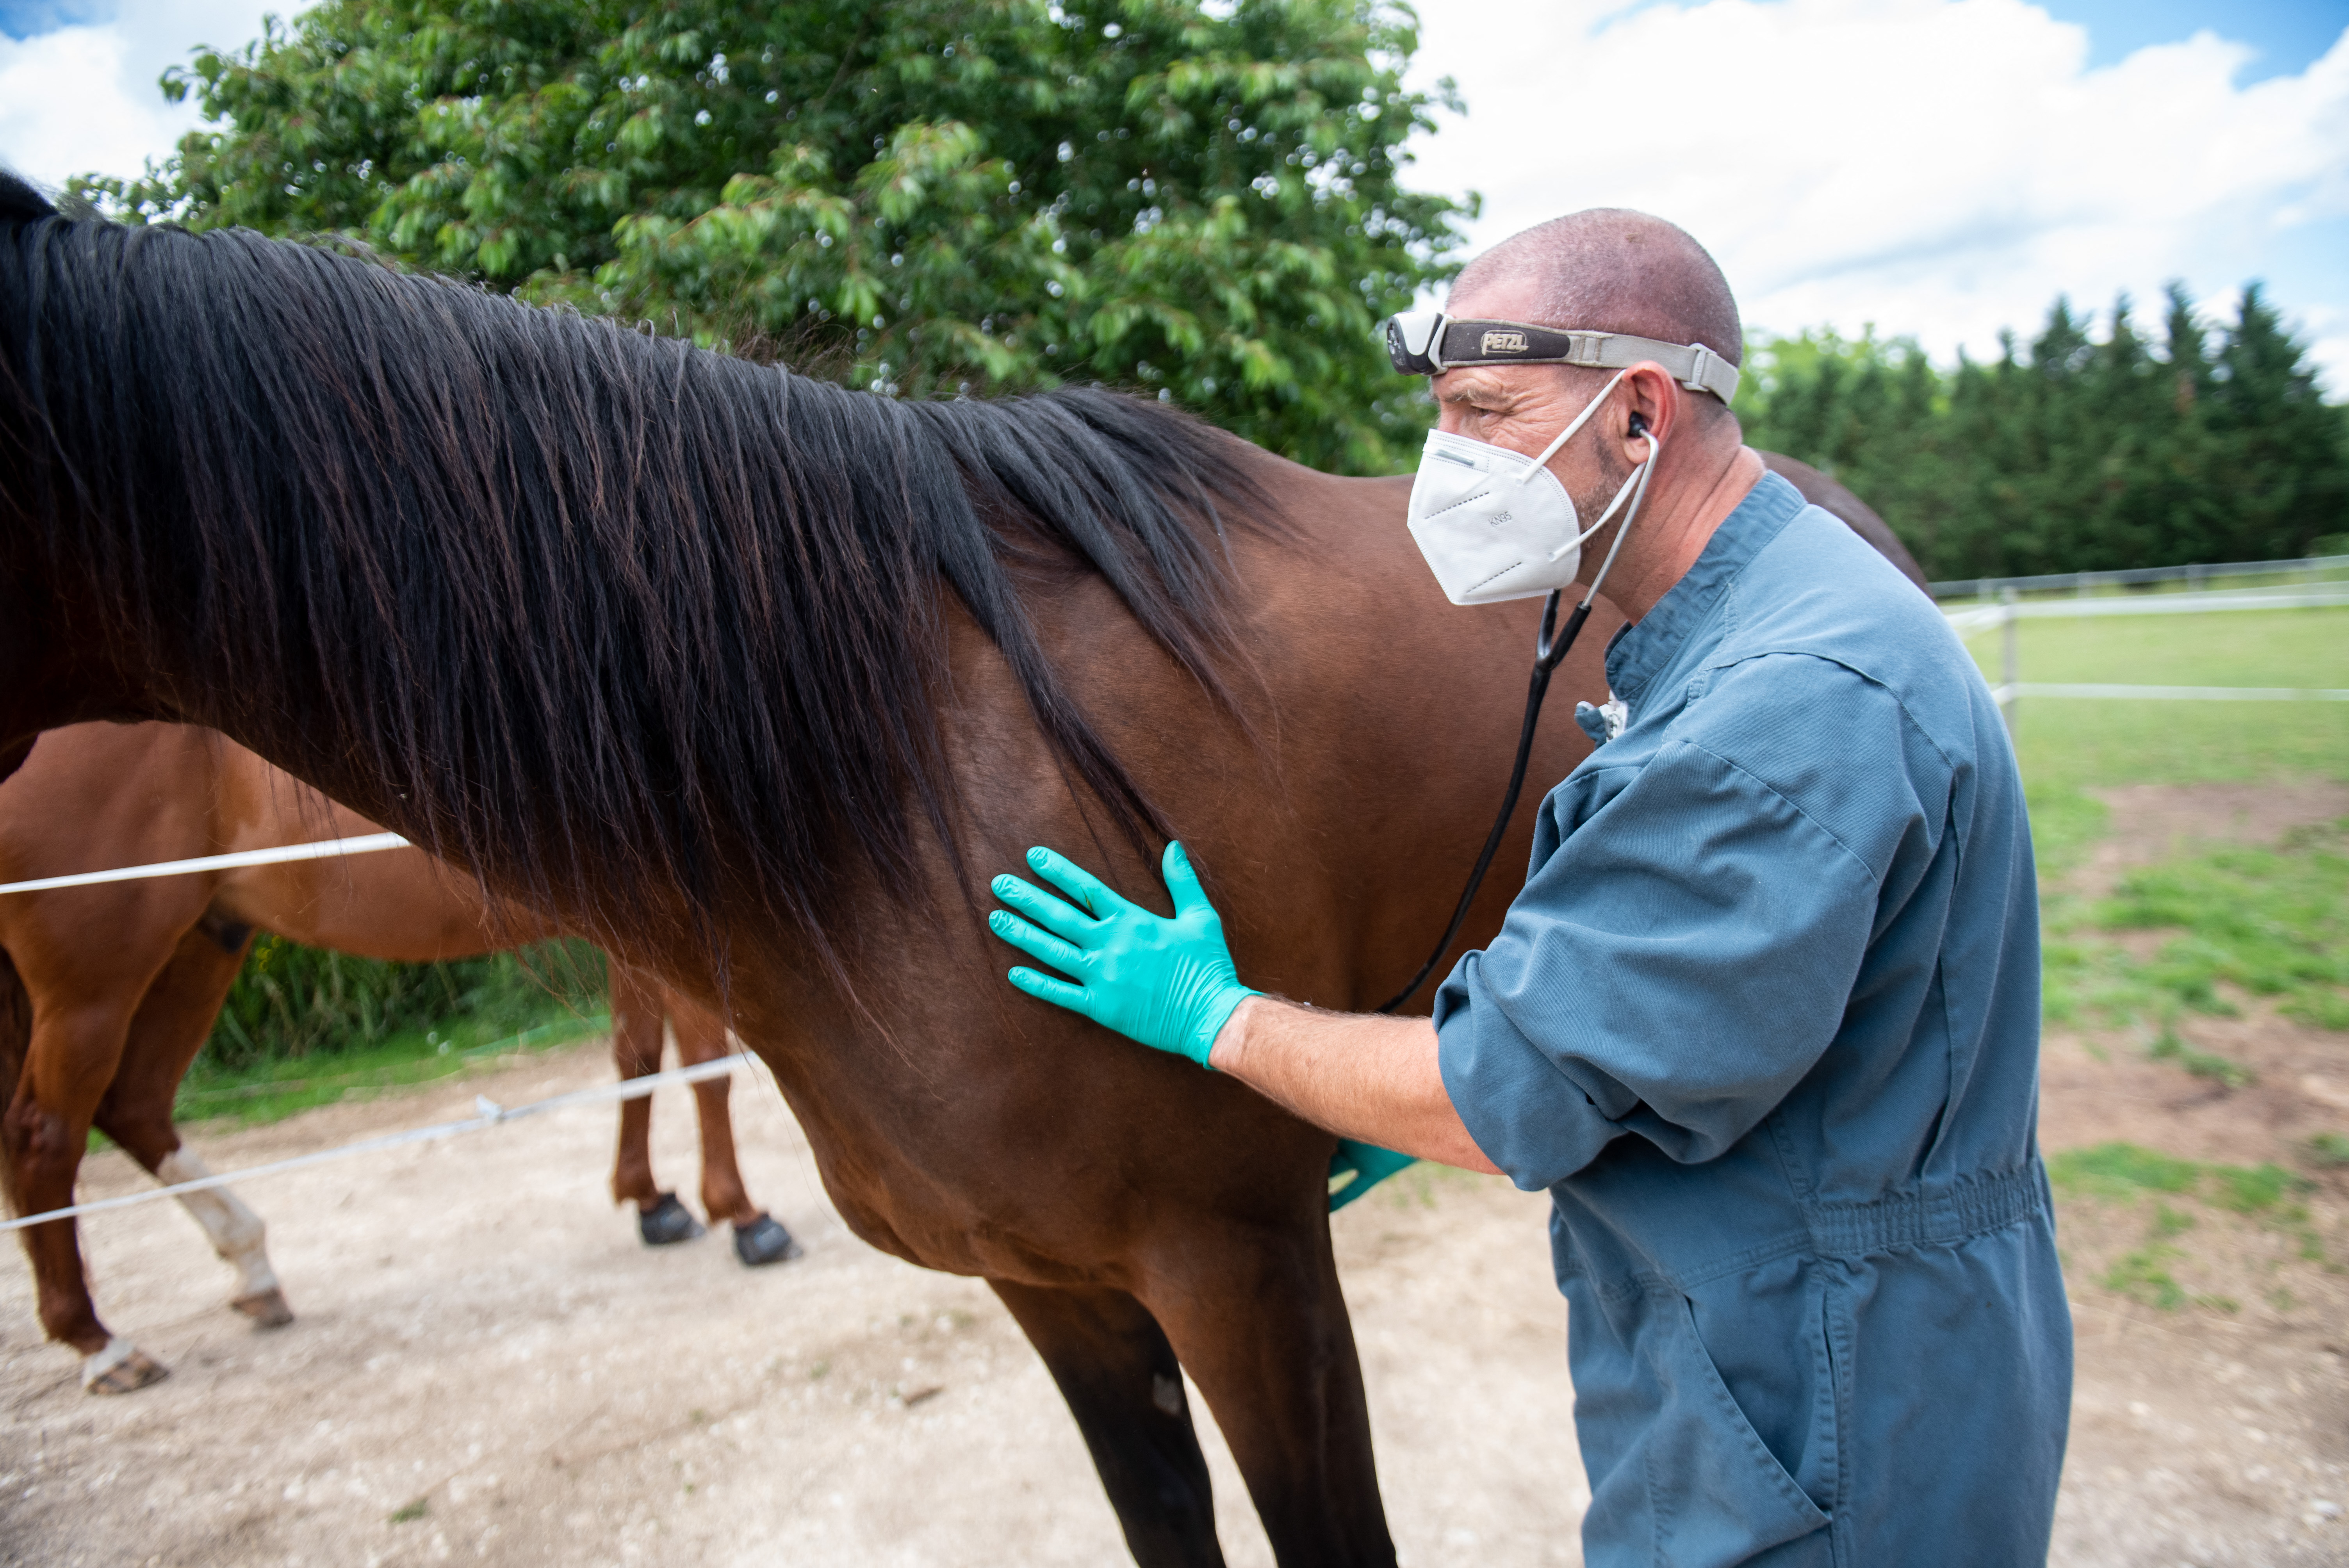 Herpeszjárvány dúl a lovak között Európában, Magyarországon is javasolt a karantén, a versenyeket felfüggesztették